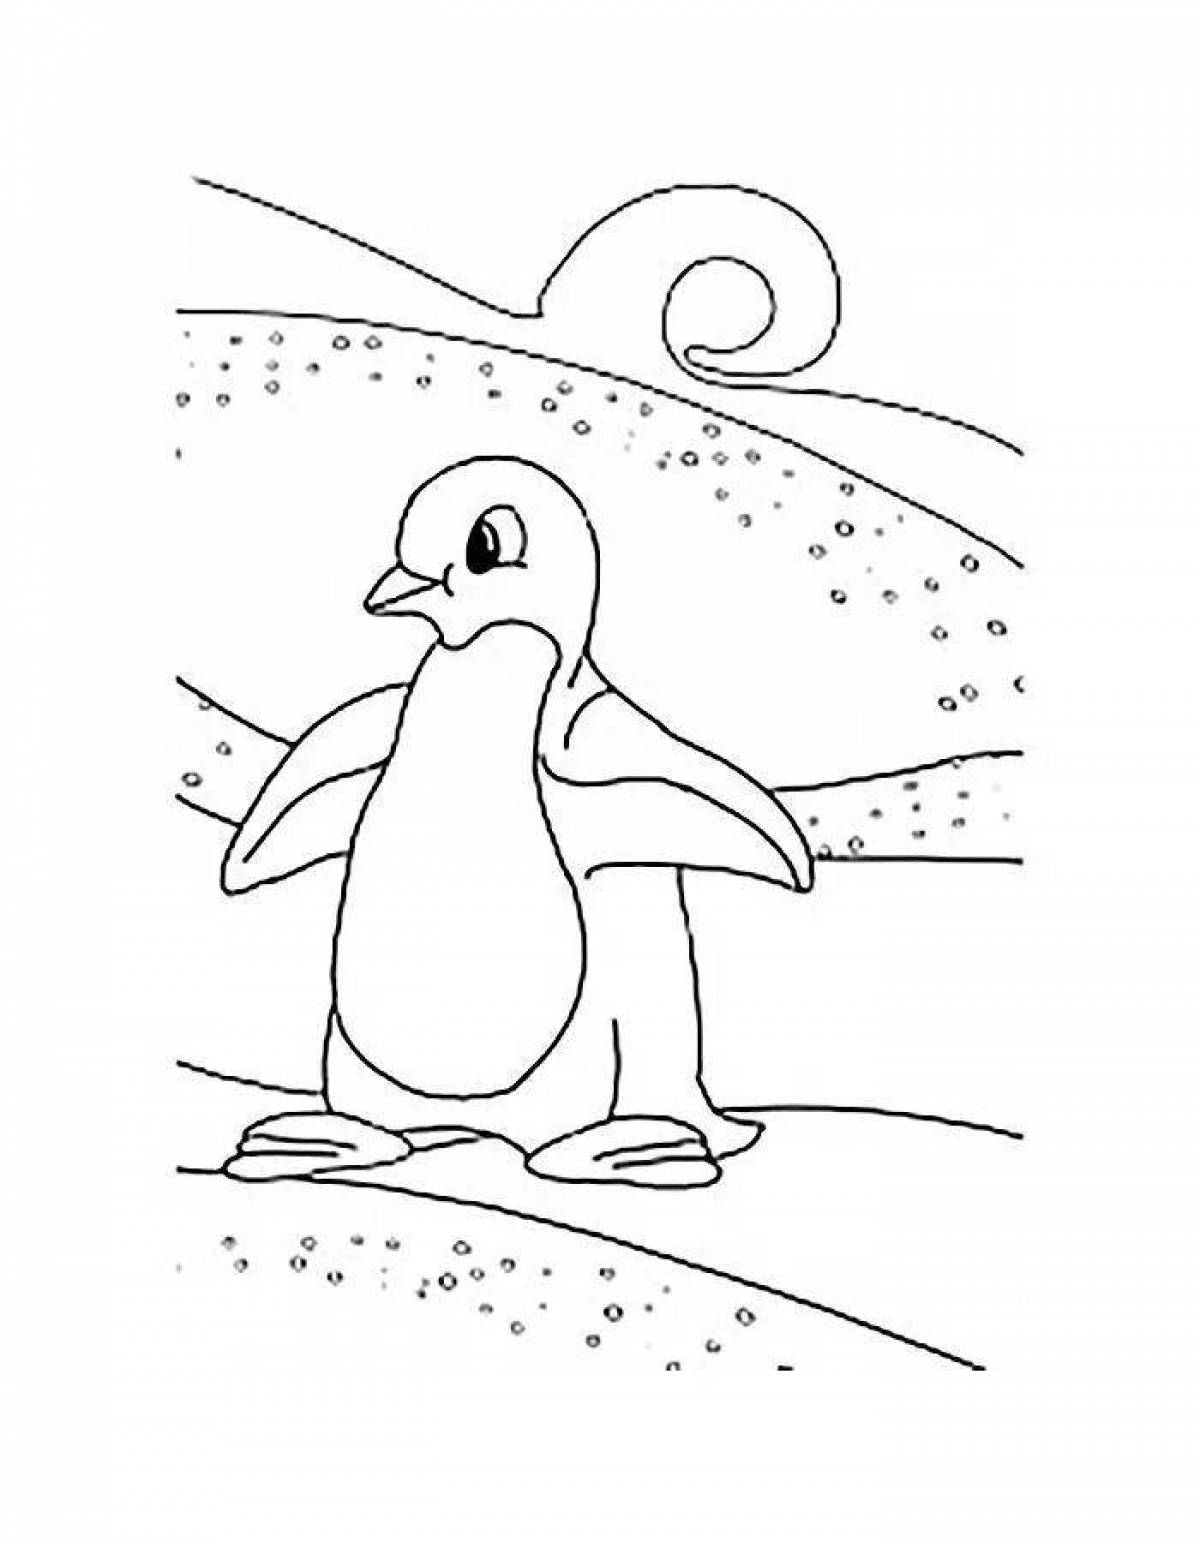 Раскраска пингвины Лоло и Пепе